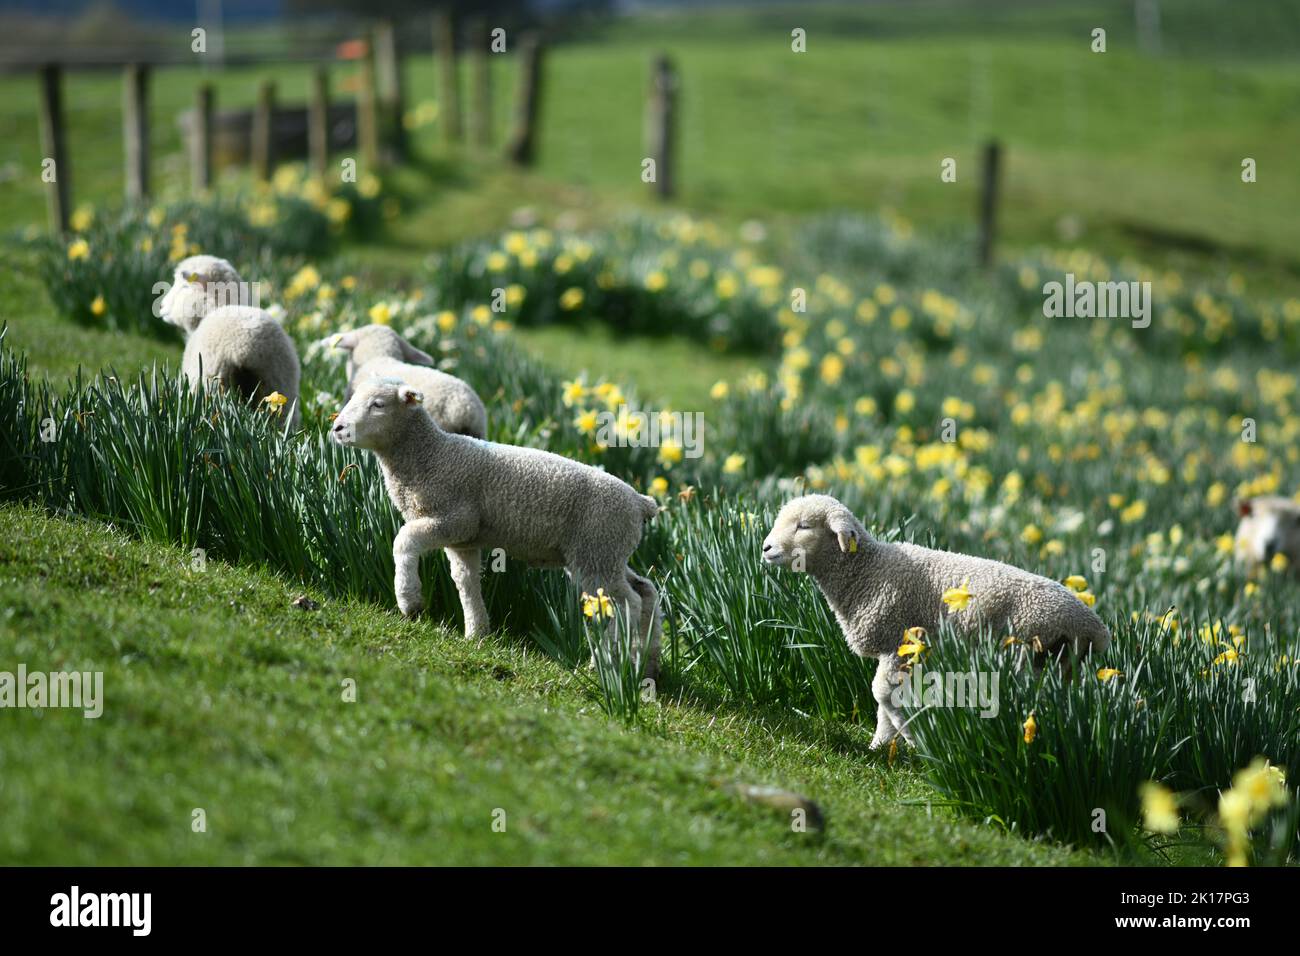 Agnelli primaverili e pecore in un paddock di narcisi vicino a Ikamatua, Costa Occidentale, Nuova Zelanda. Foto Stock